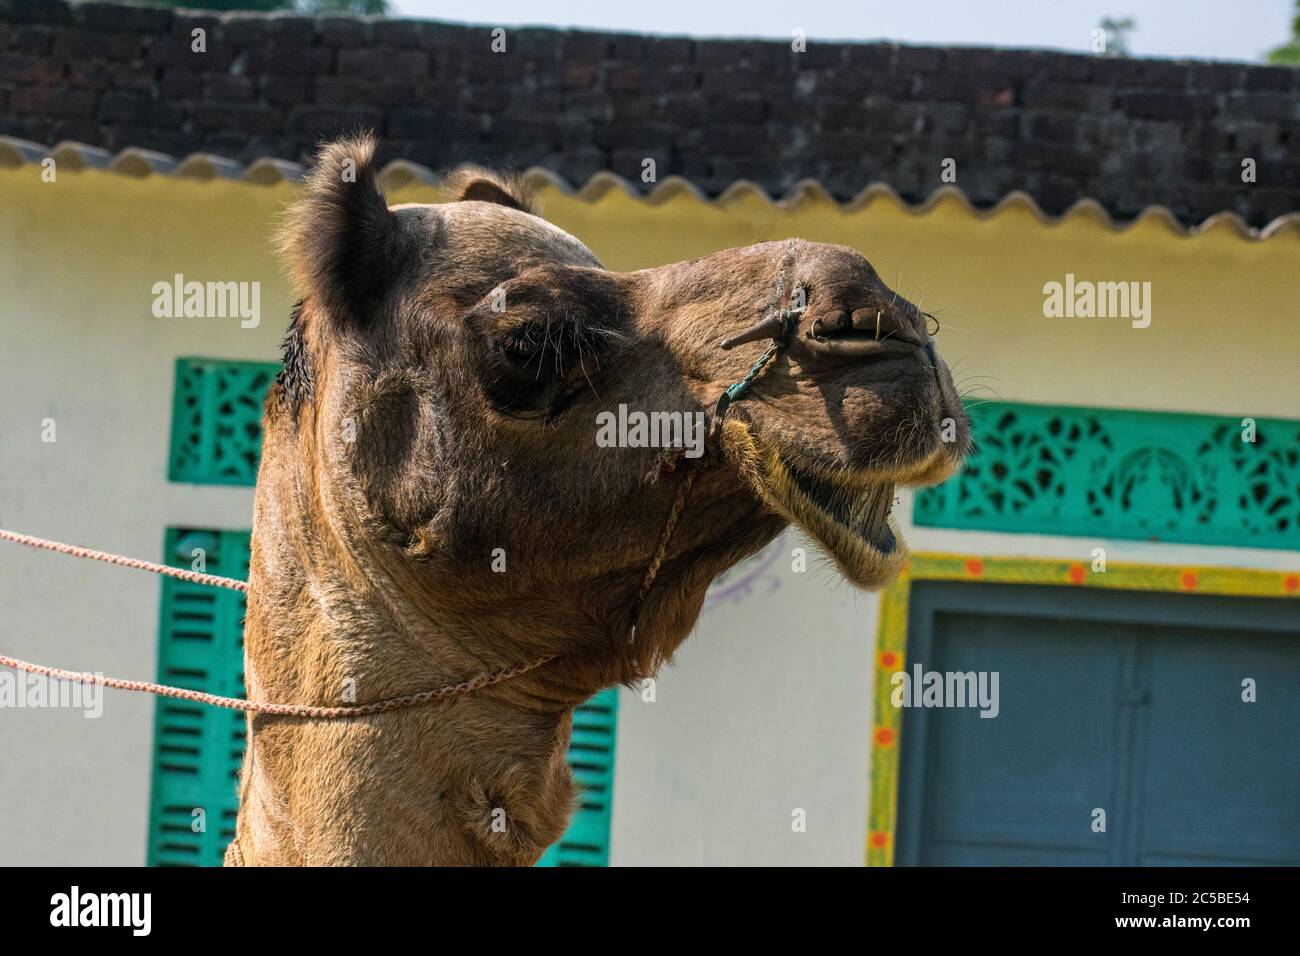 Das Kamel ist Teil der Landschaft von Rajasthan; die Ikone der Wüste Staat, Teil seiner kulturellen Identität, und ein wirtschaftlich wichtiges Tier für Stockfoto